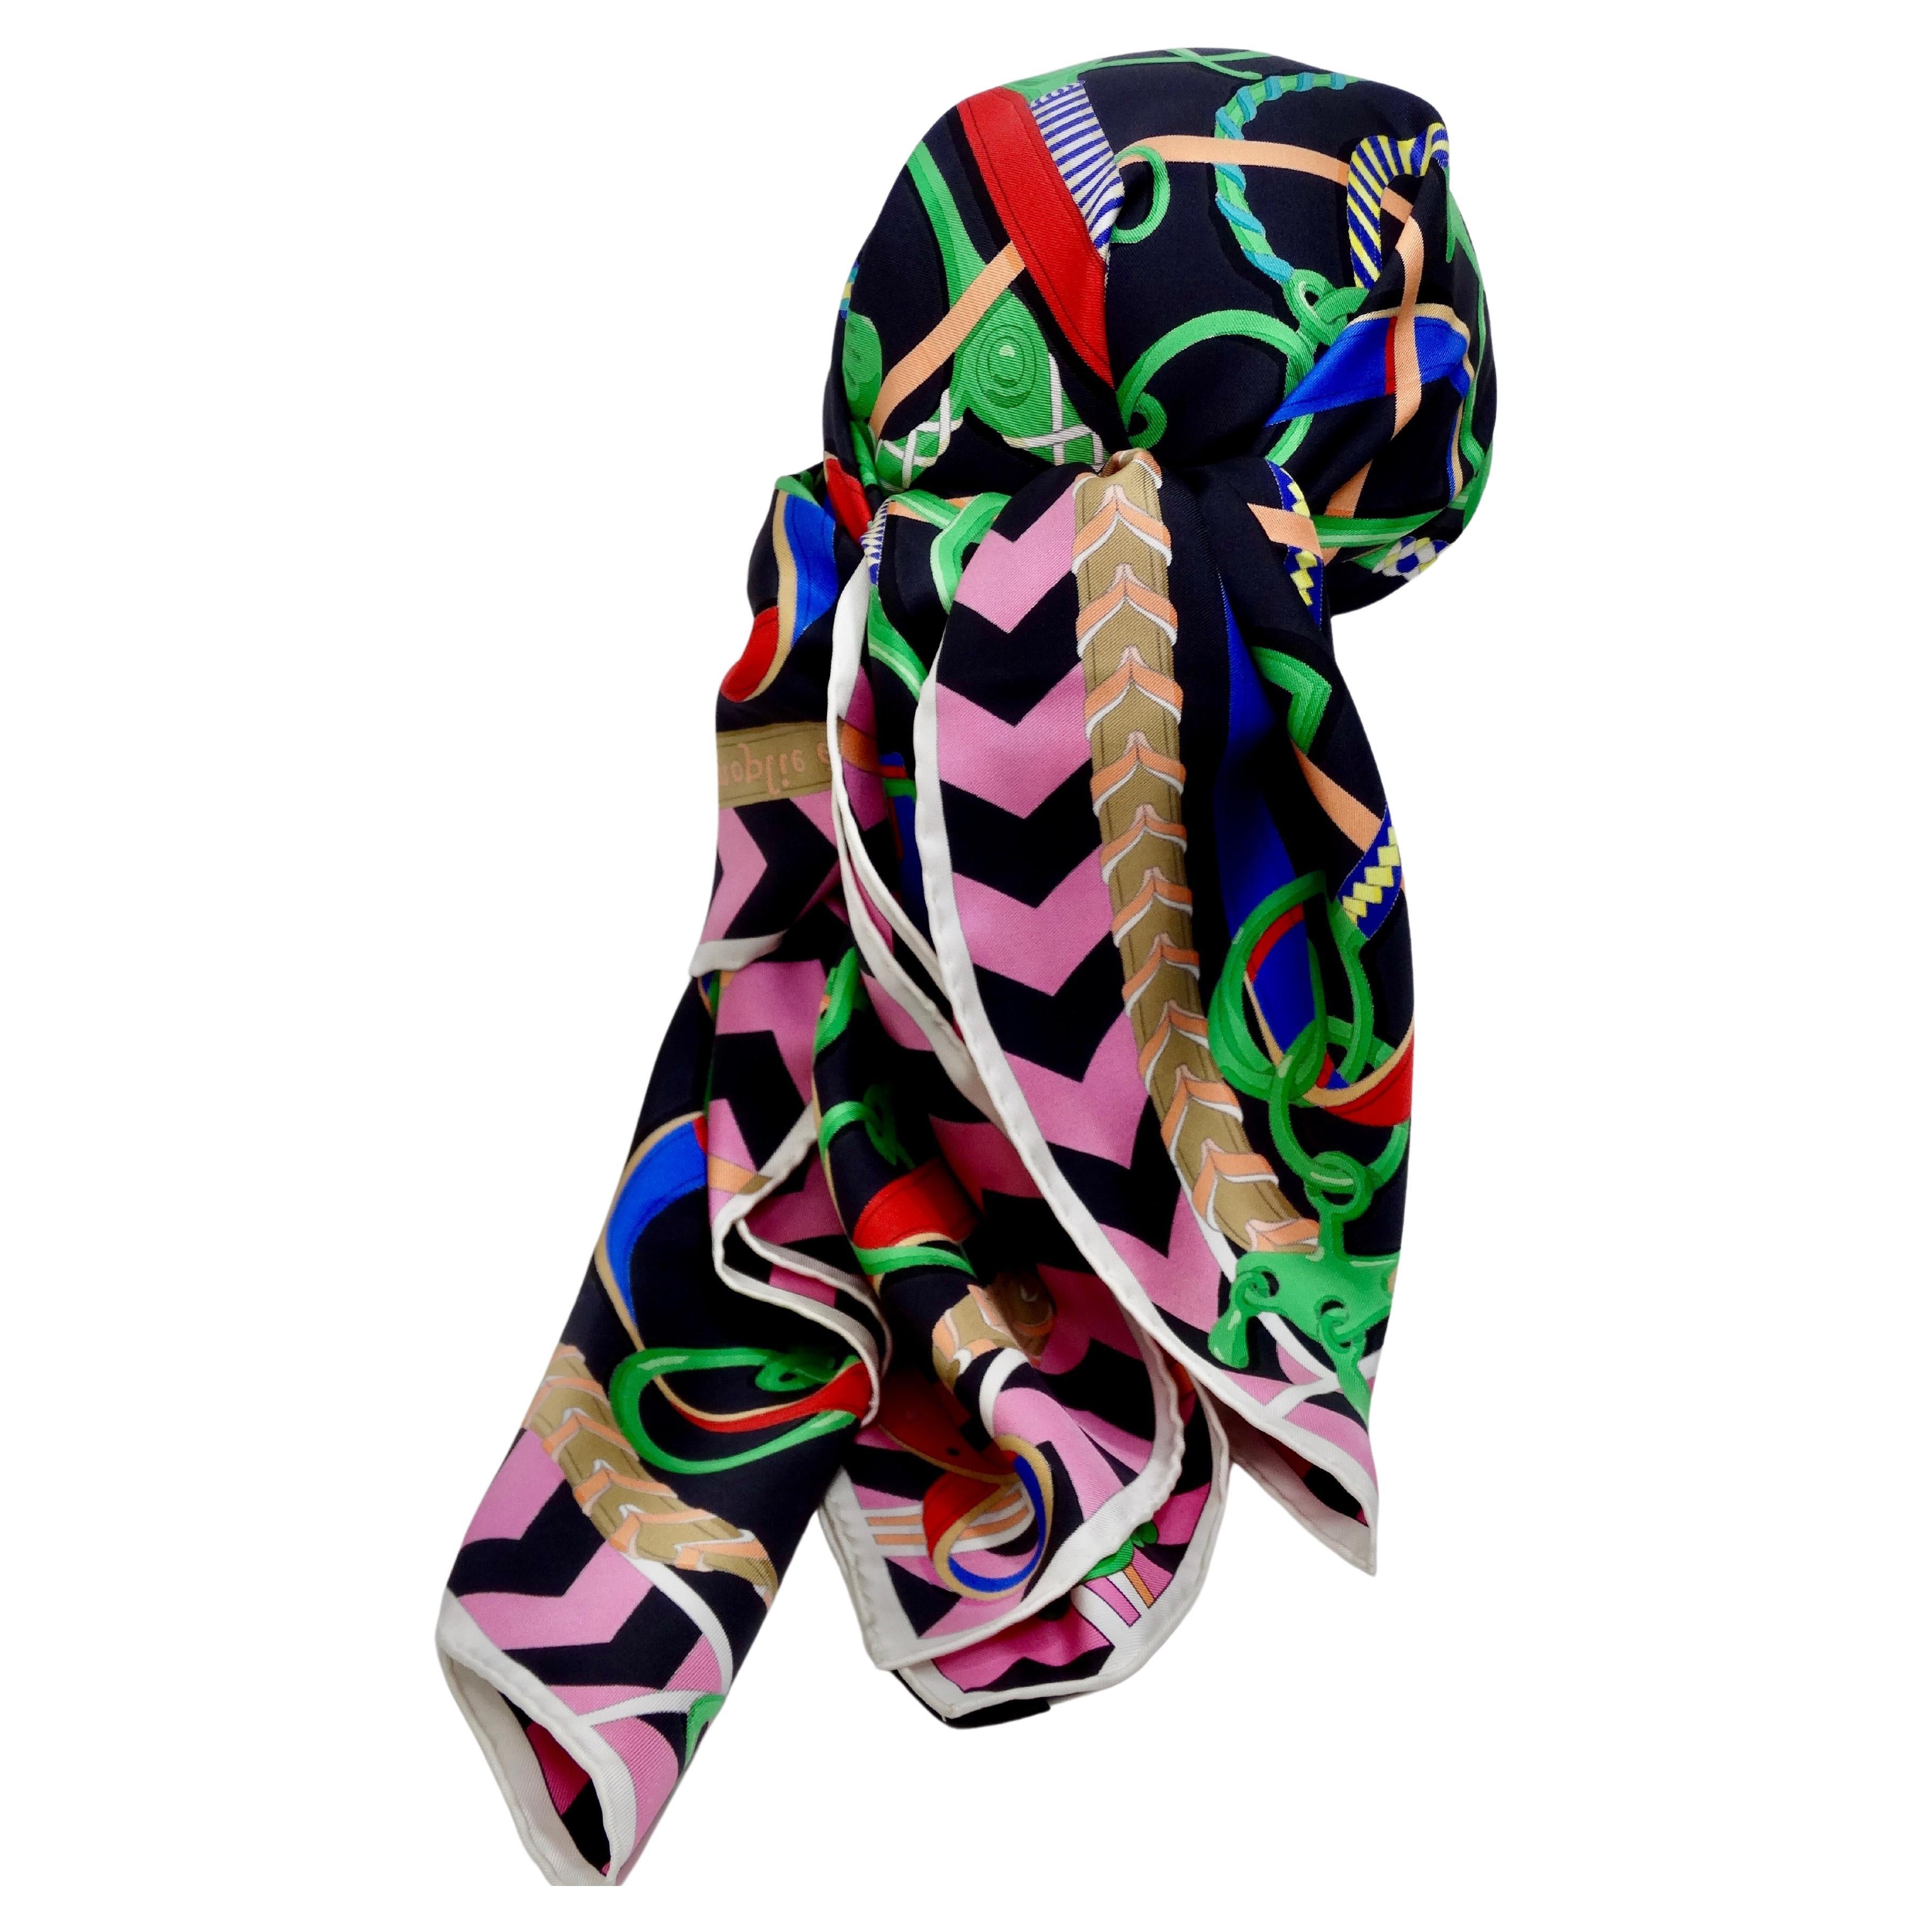 Saisissez ce magnifique foulard HERMES vibrant pour votre collection ! Ce n'est plus seulement une écharpe, d'innombrables idées créatives pour mettre en valeur ces œuvres d'art ont été partagées au fil des ans, comme les encadrer et les suspendre